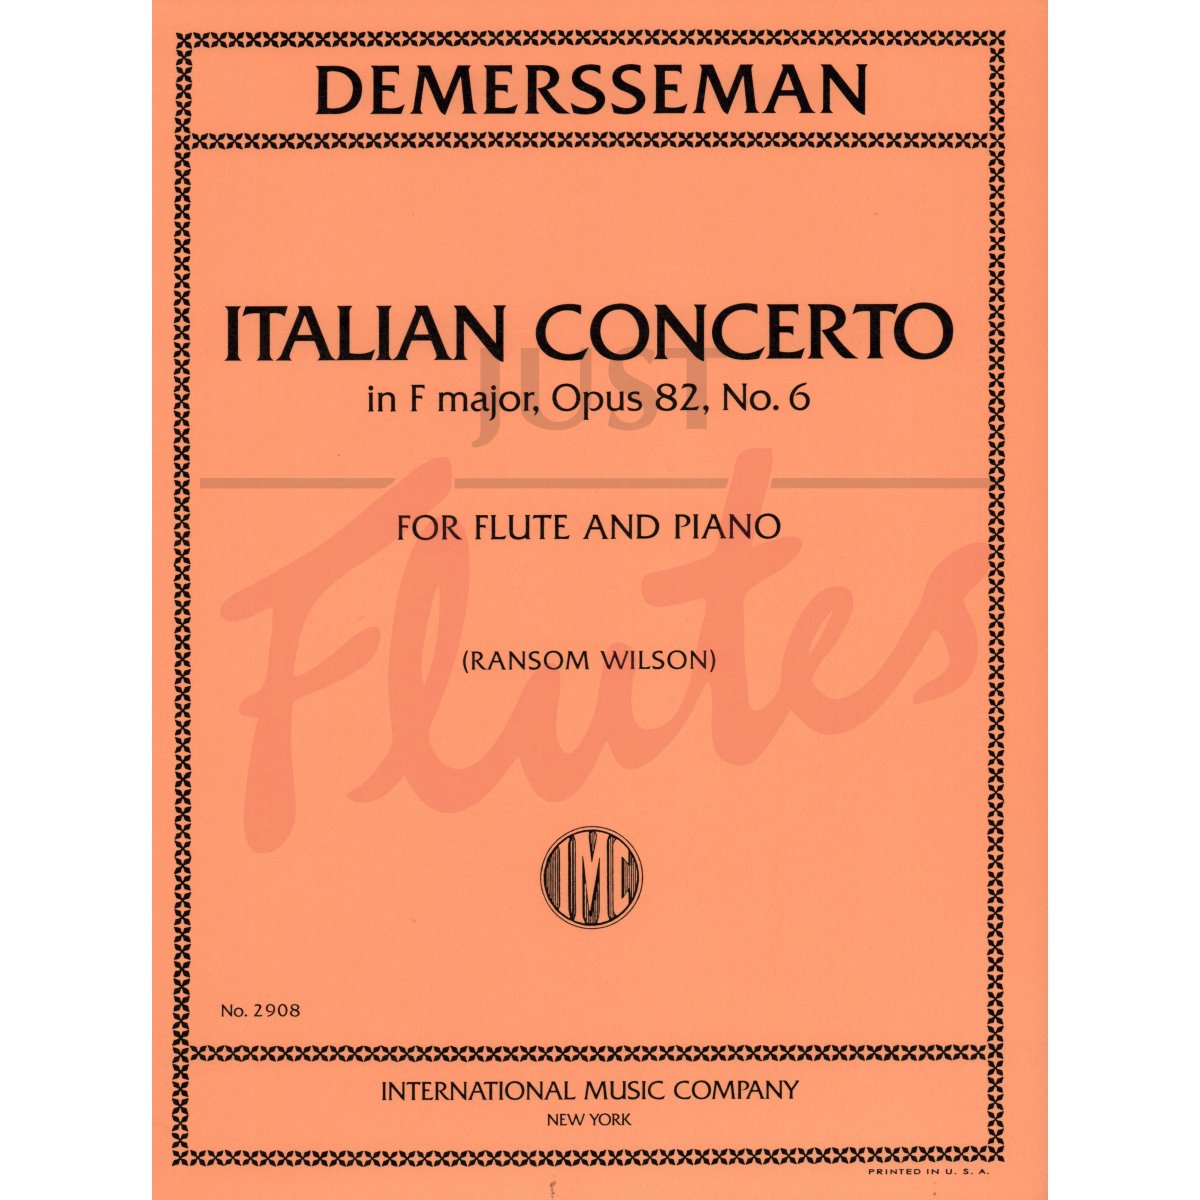 Italian Concerto in F Major for Flute and Piano